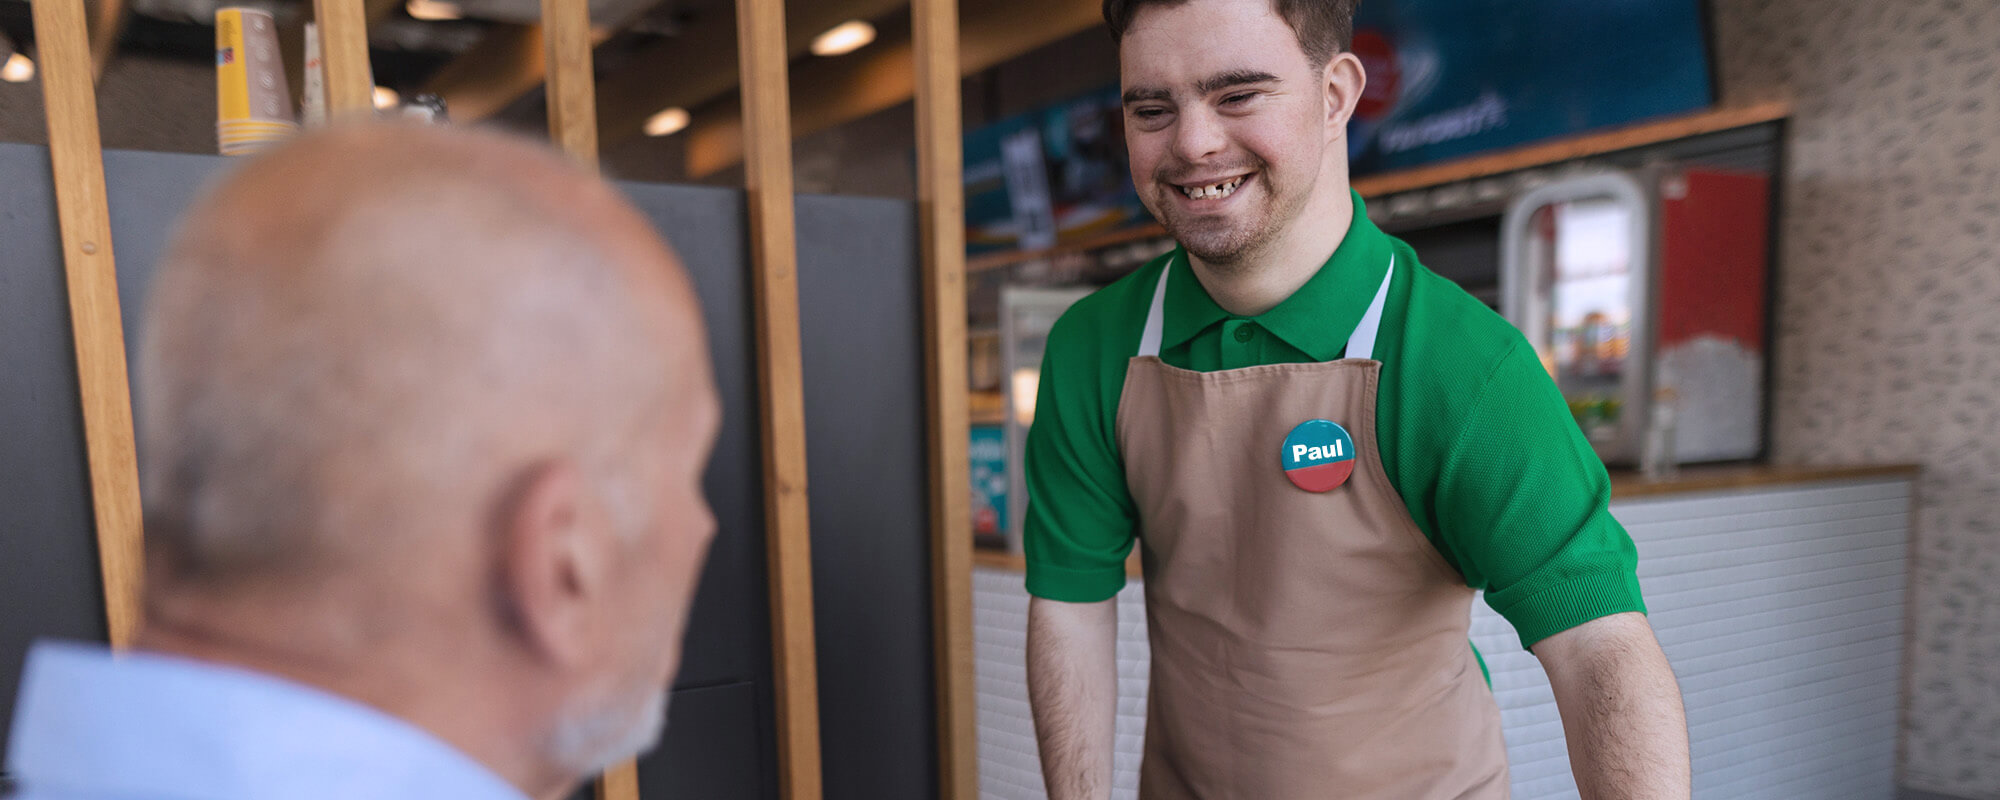 Das Foto zeigt einen jungen Mann mit Down-Syndrom. Er steht lächelnd an einer Ladentheke und bedient einen älteren Herren, von dem nur der Kopf im seitlichen Profil zu sehen ist.